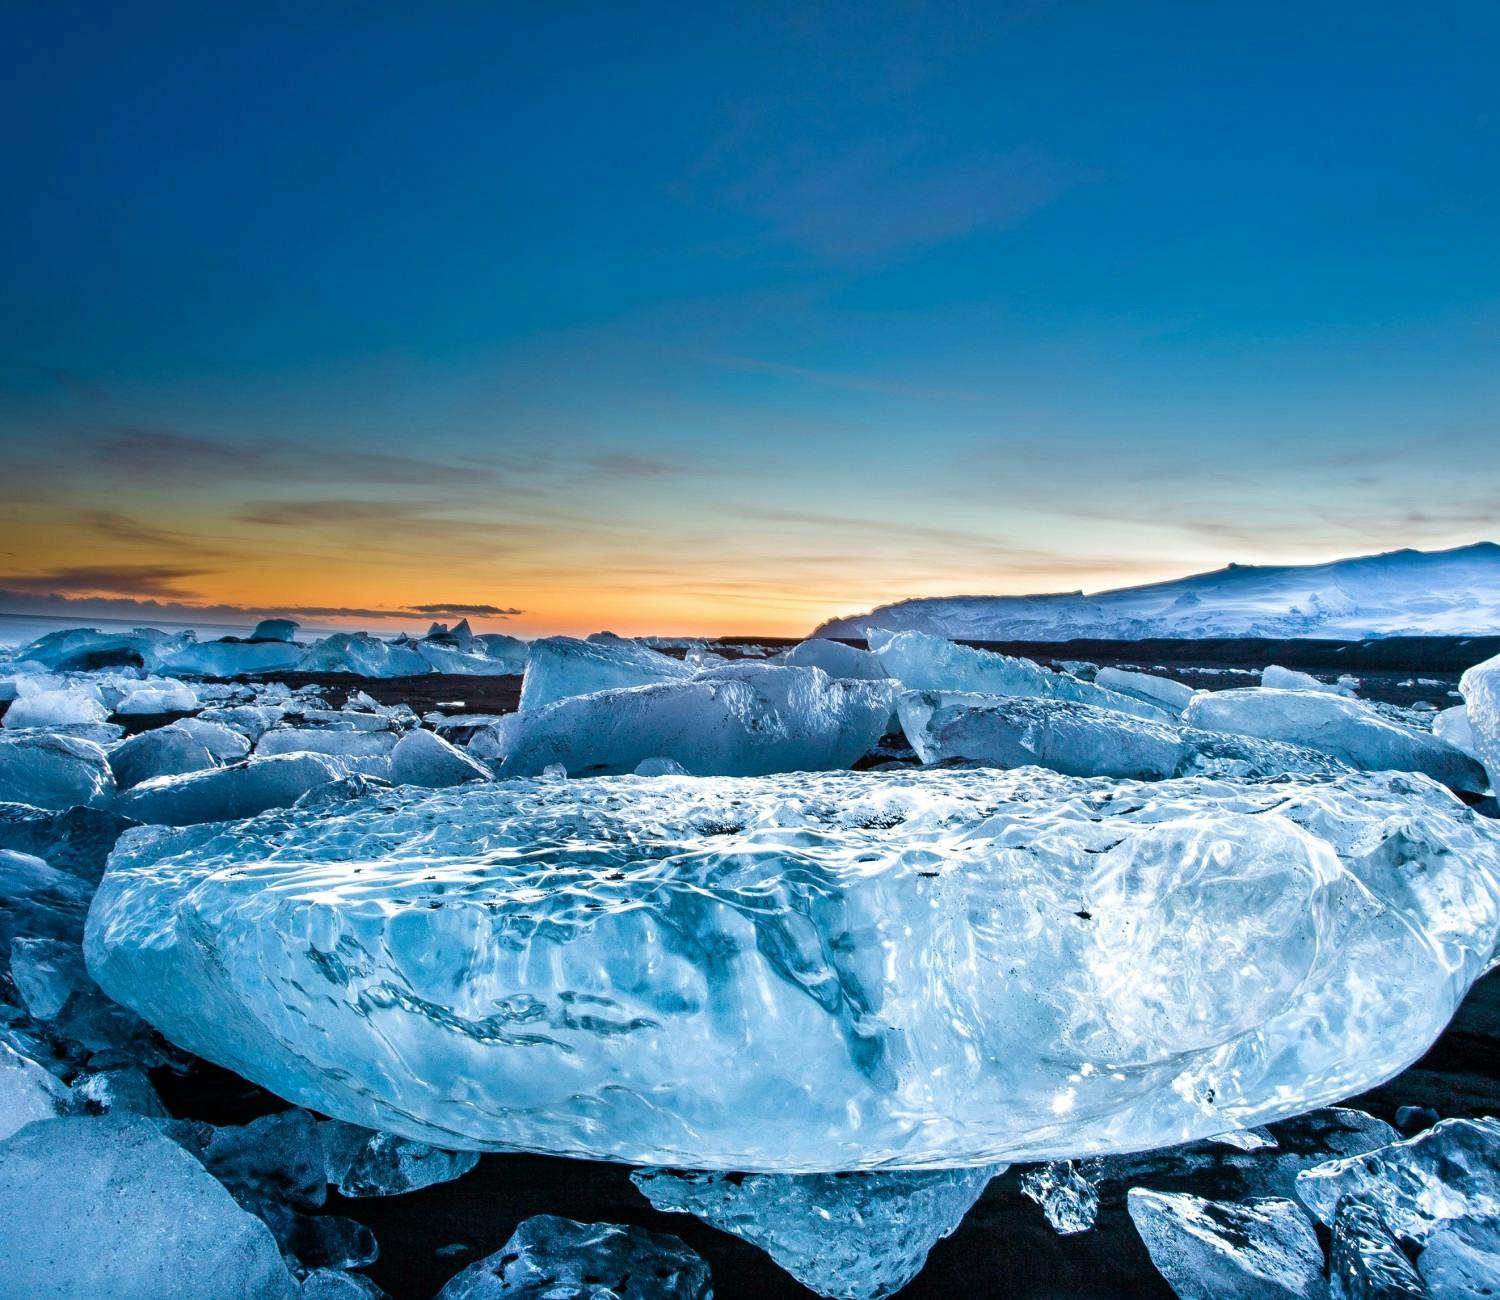 Tagestour zur Gletscherlagune Jökulsárlón ab Reykjavik